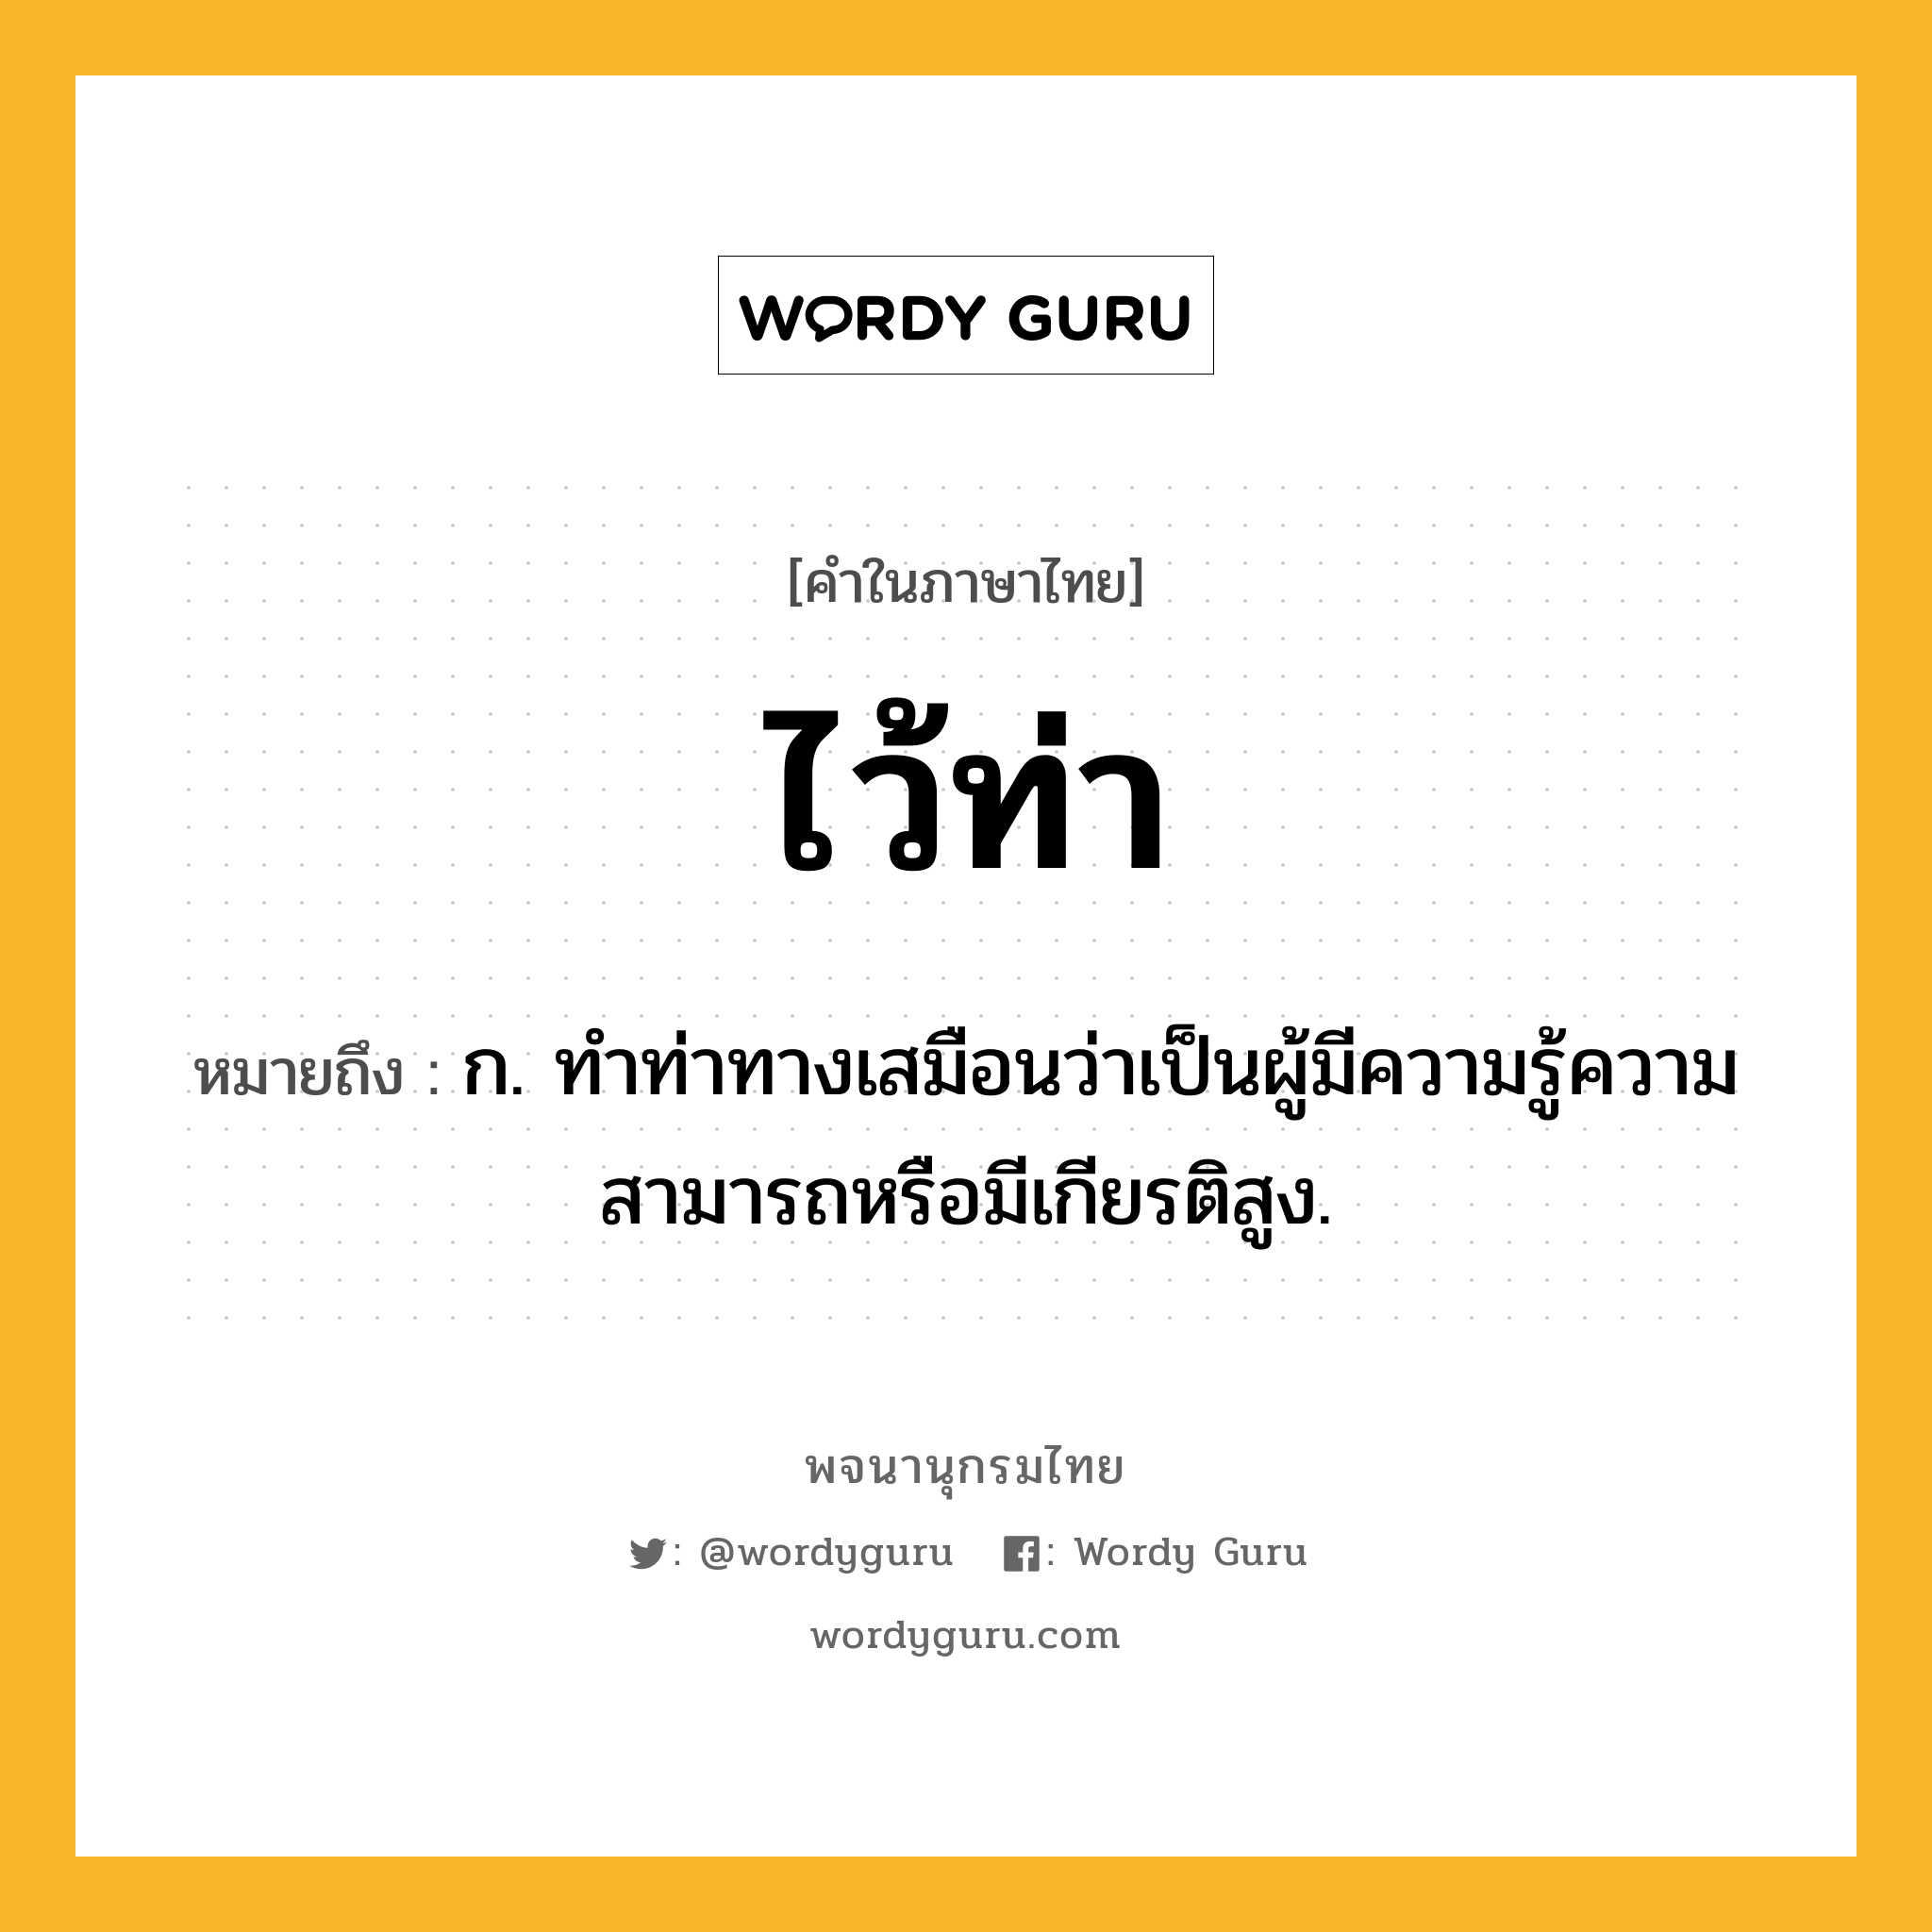 ไว้ท่า ความหมาย หมายถึงอะไร?, คำในภาษาไทย ไว้ท่า หมายถึง ก. ทำท่าทางเสมือนว่าเป็นผู้มีความรู้ความสามารถหรือมีเกียรติสูง.